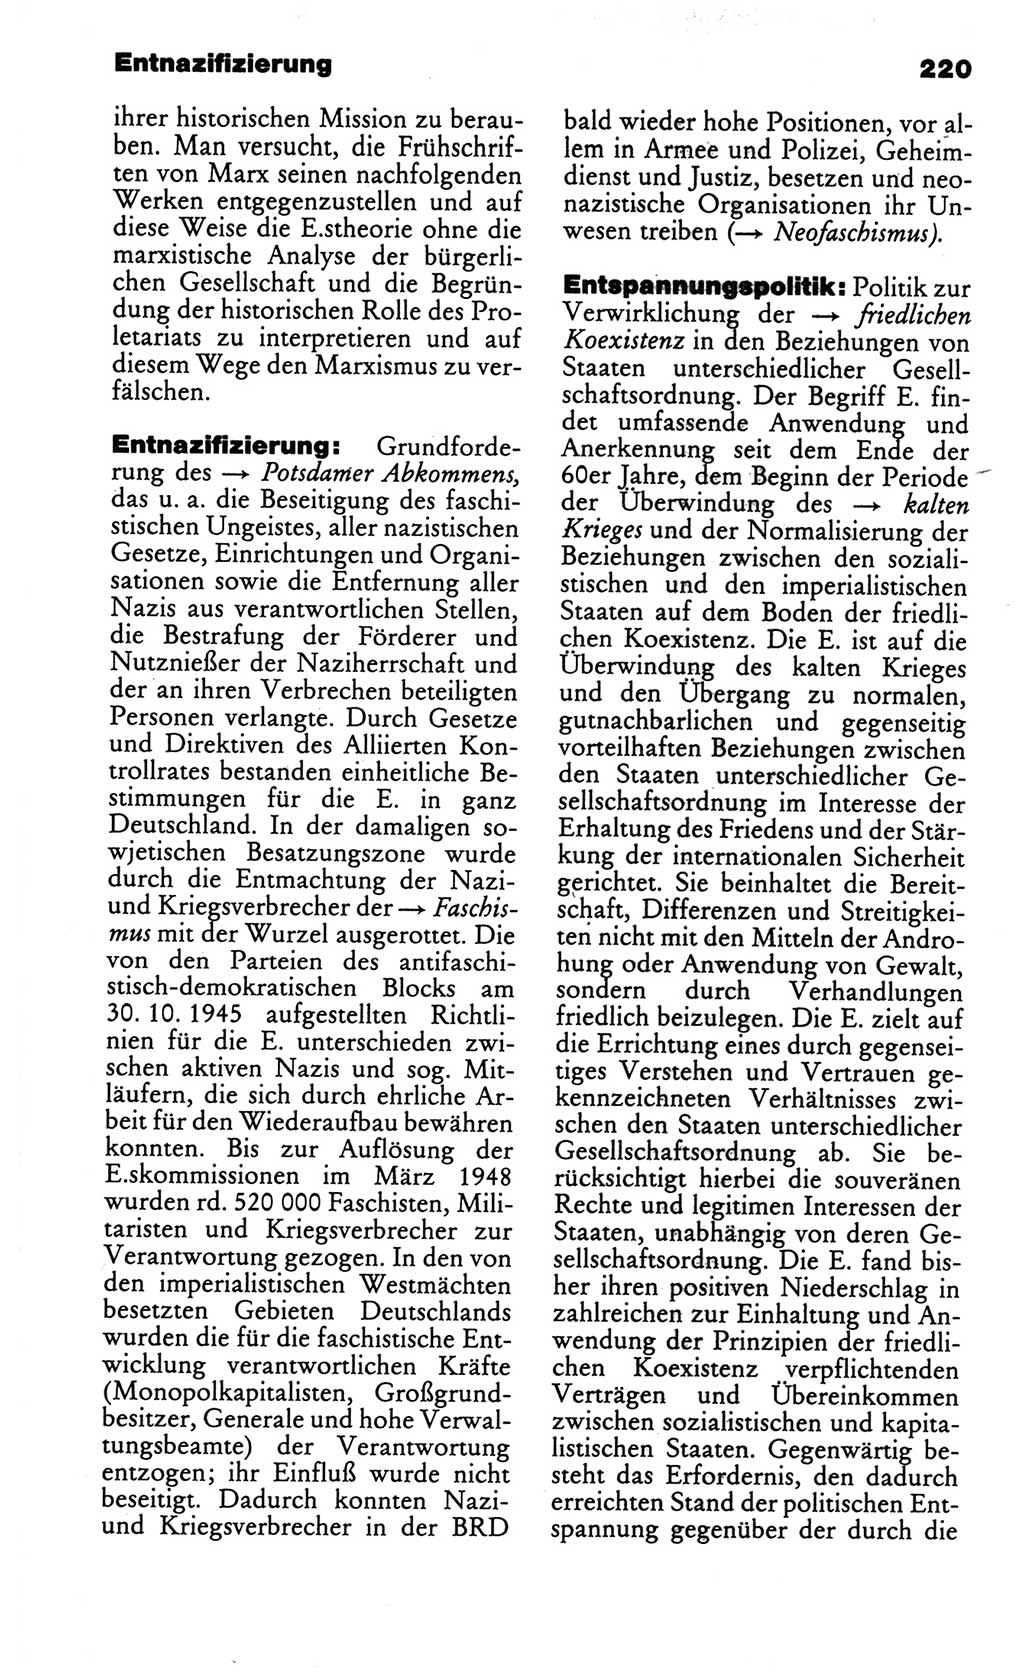 Kleines politisches Wörterbuch [Deutsche Demokratische Republik (DDR)] 1986, Seite 220 (Kl. pol. Wb. DDR 1986, S. 220)